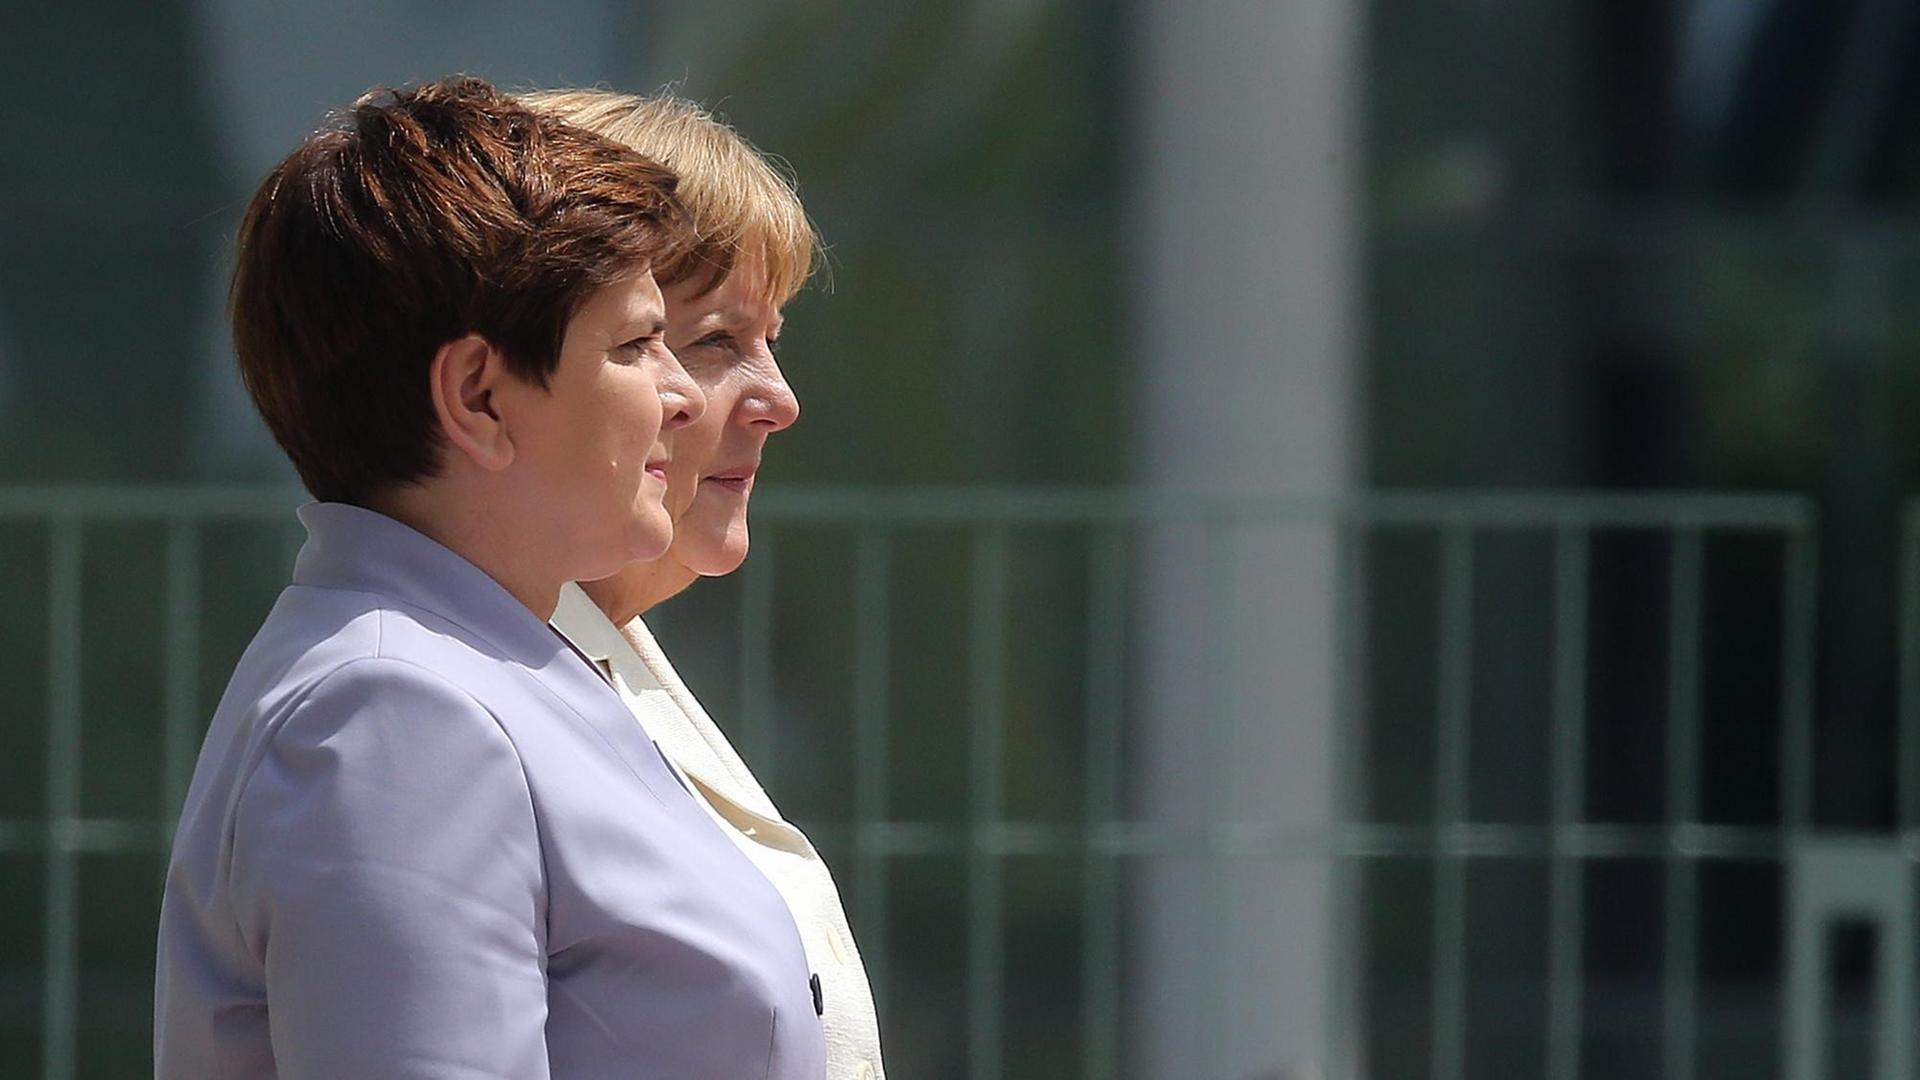 Bundeskanzlerin Angela Merkel (CDU) empfängt am 22.06.2016 vor dem Bundeskanzleramt in Berlin die polnische Ministerpräsidentin Beata Szydlo mit militärischen Ehren.